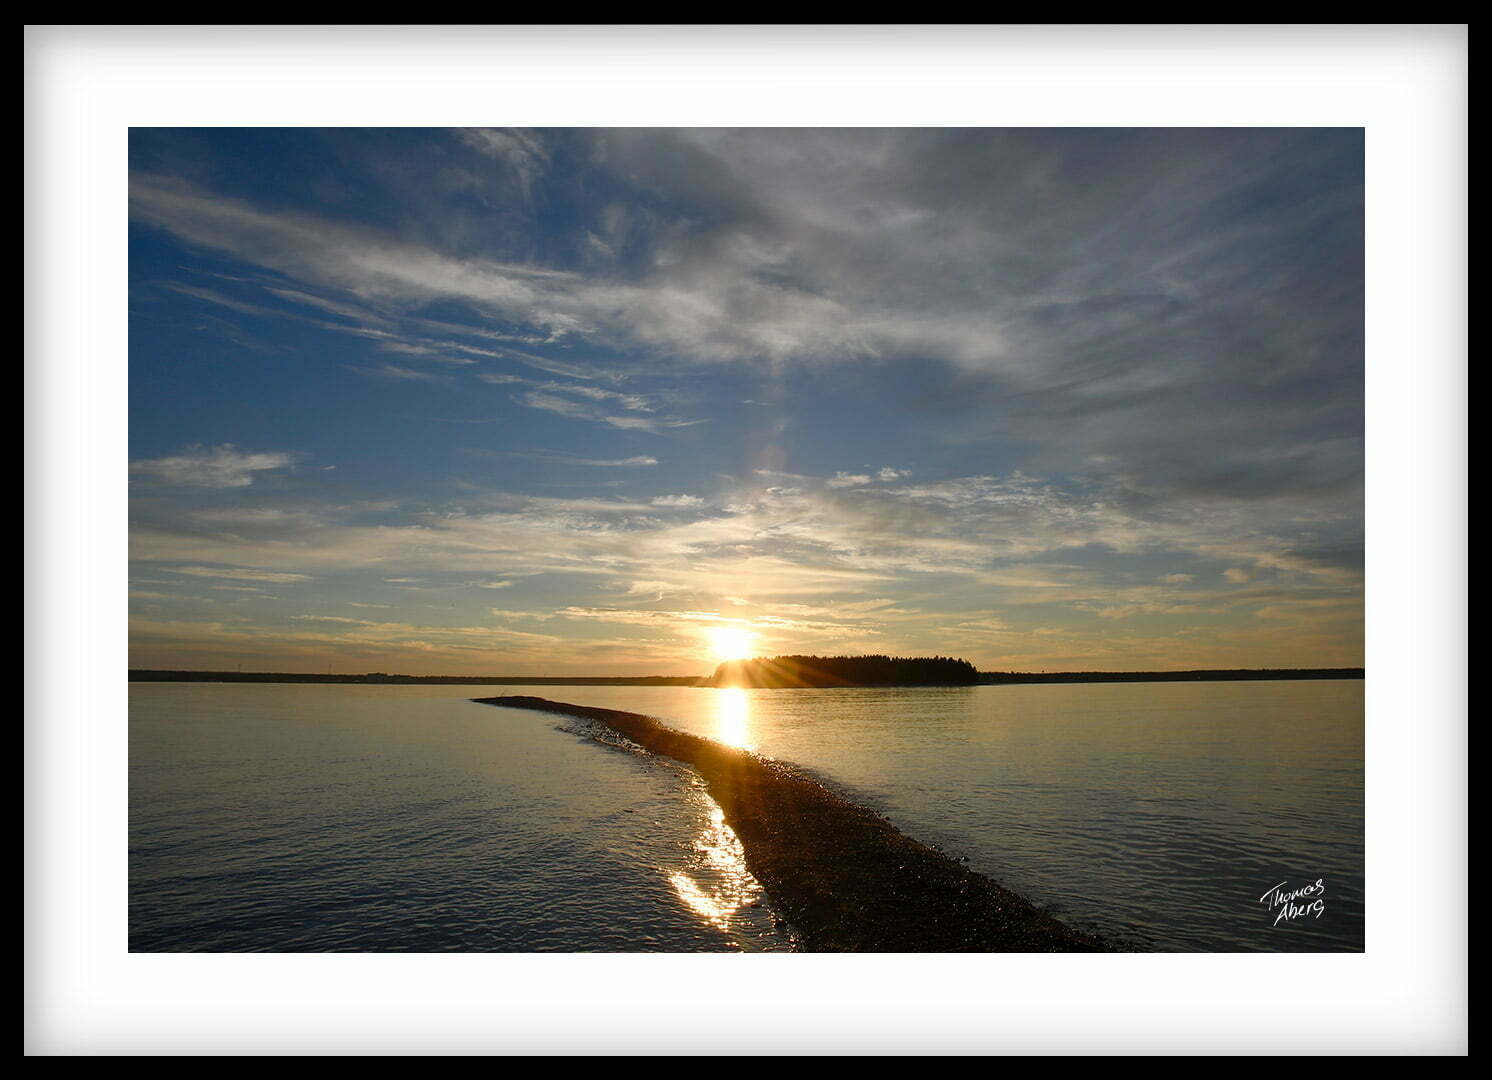 Liggande tavla 00138 Pite havsbad Lill-sandskäret solnedgång Piteå skärgård